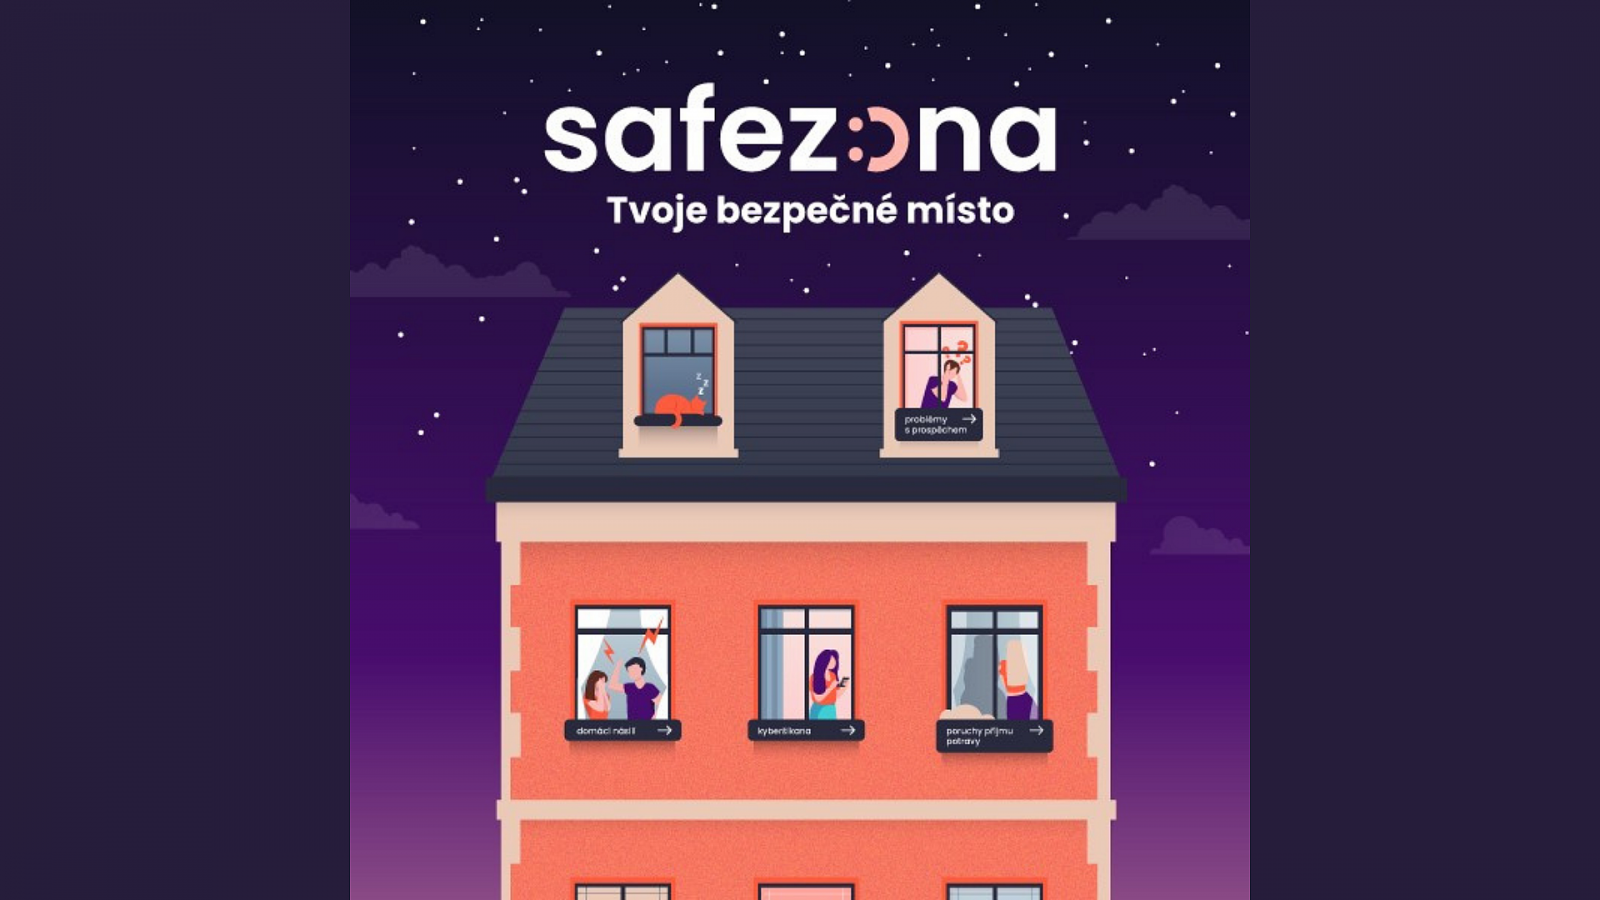 Projekt Safezóna spuštěn i v síti ÁMOS vision